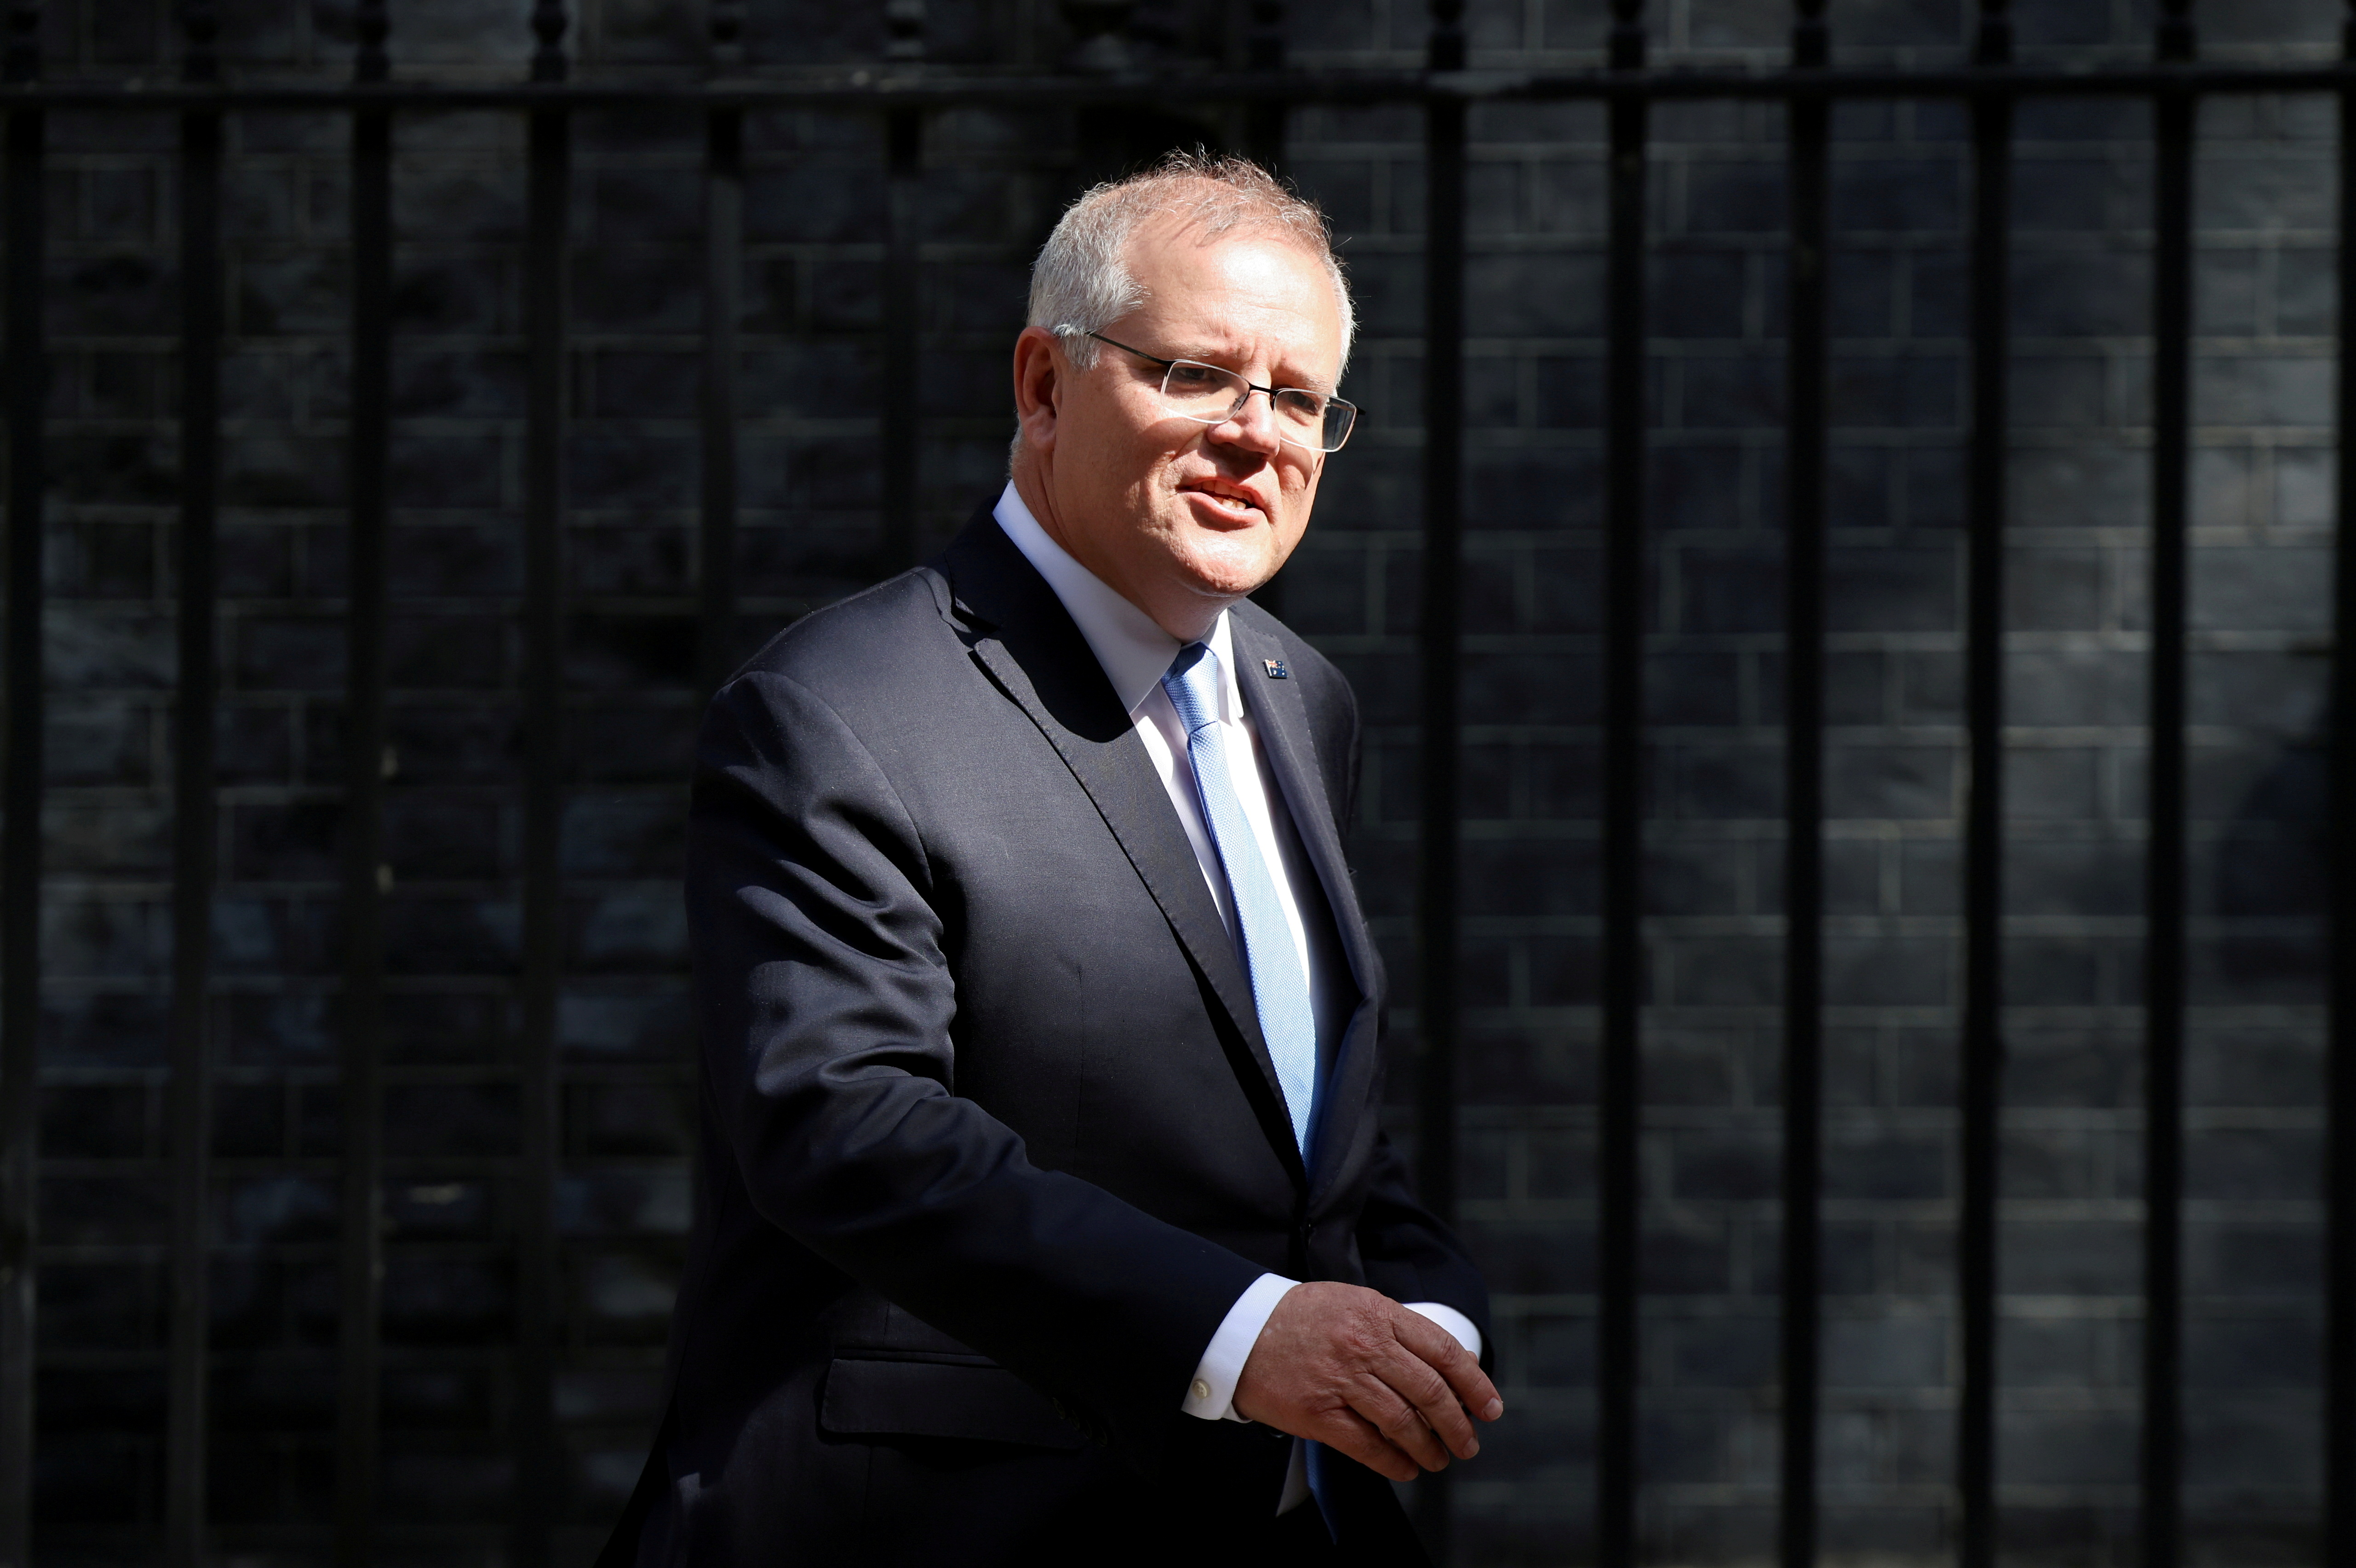 Australian PM Scott Morrison in London